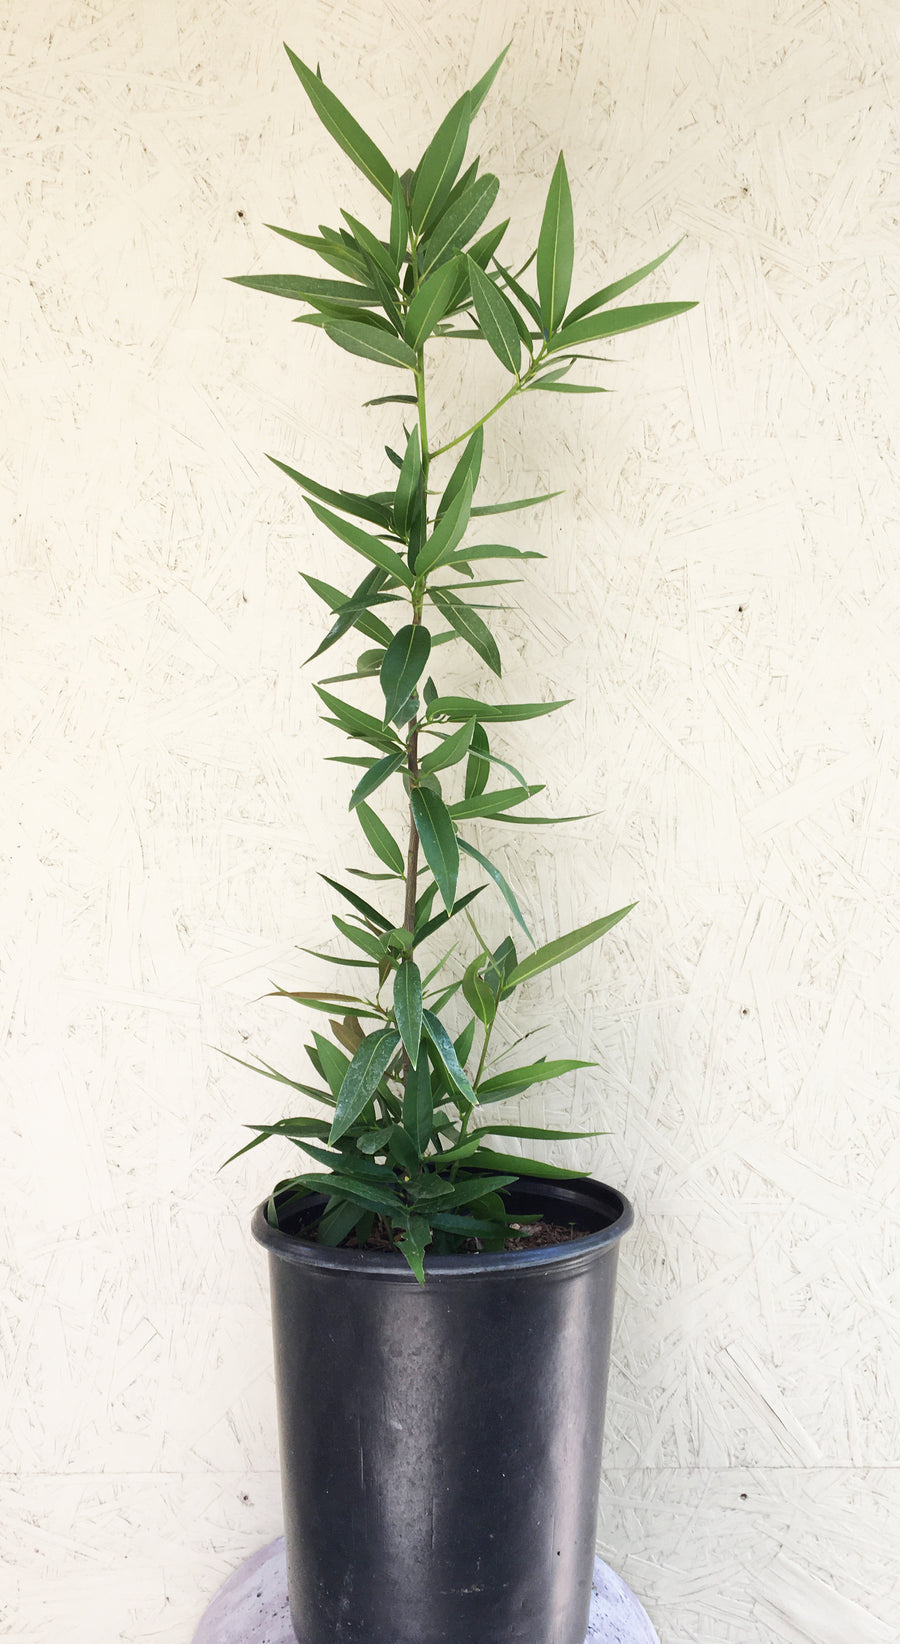 Umbellularia californica, California laurel